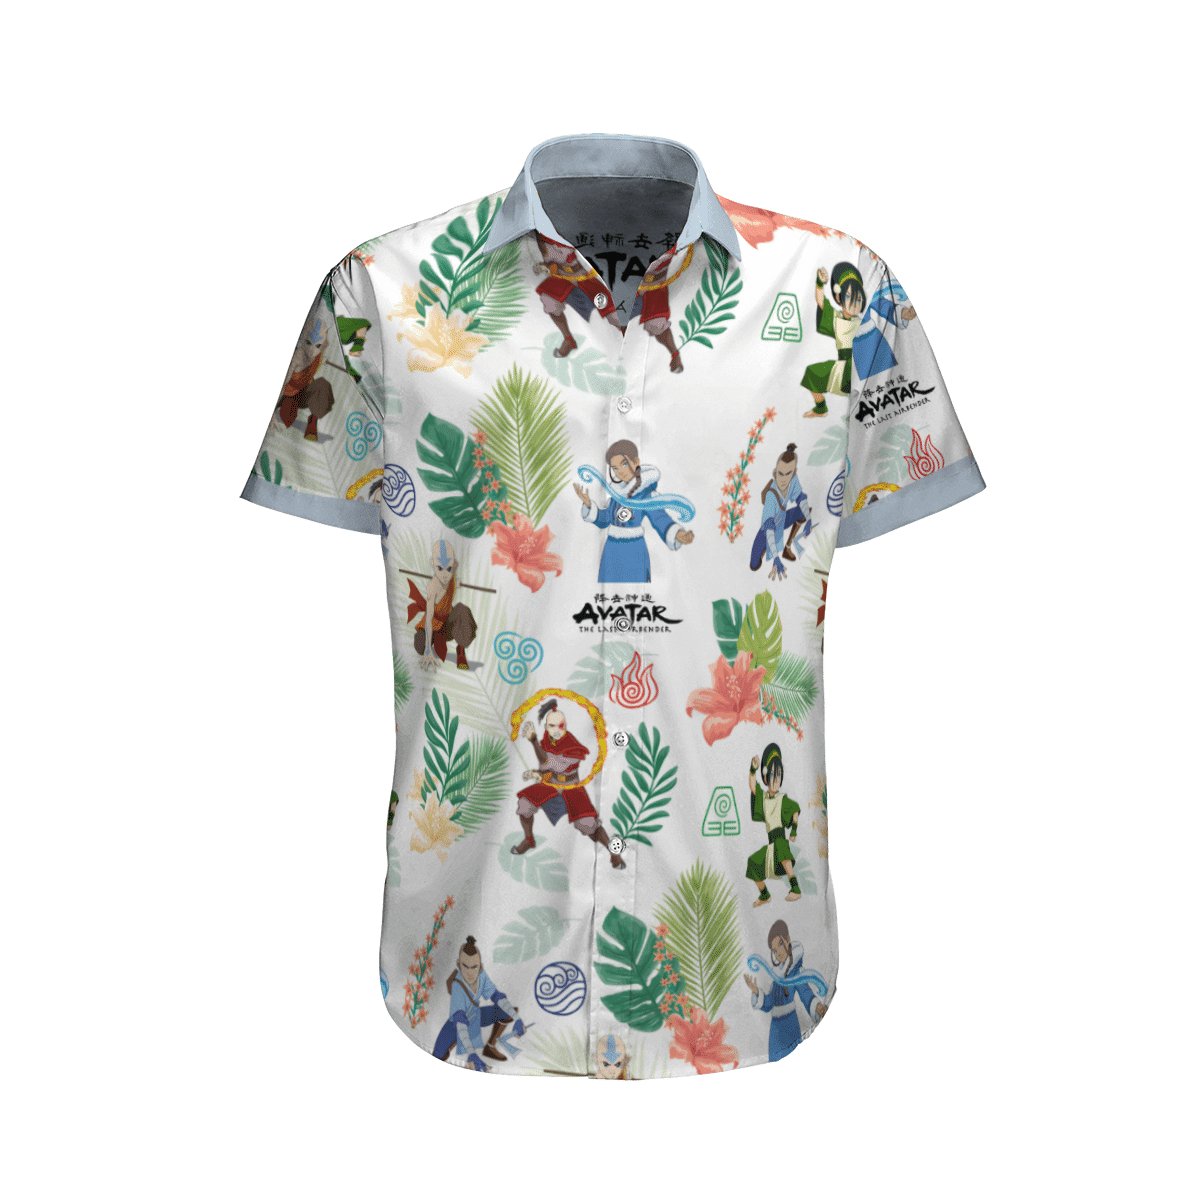 Earth Kingdom Avatar Hawaiian shirt 5